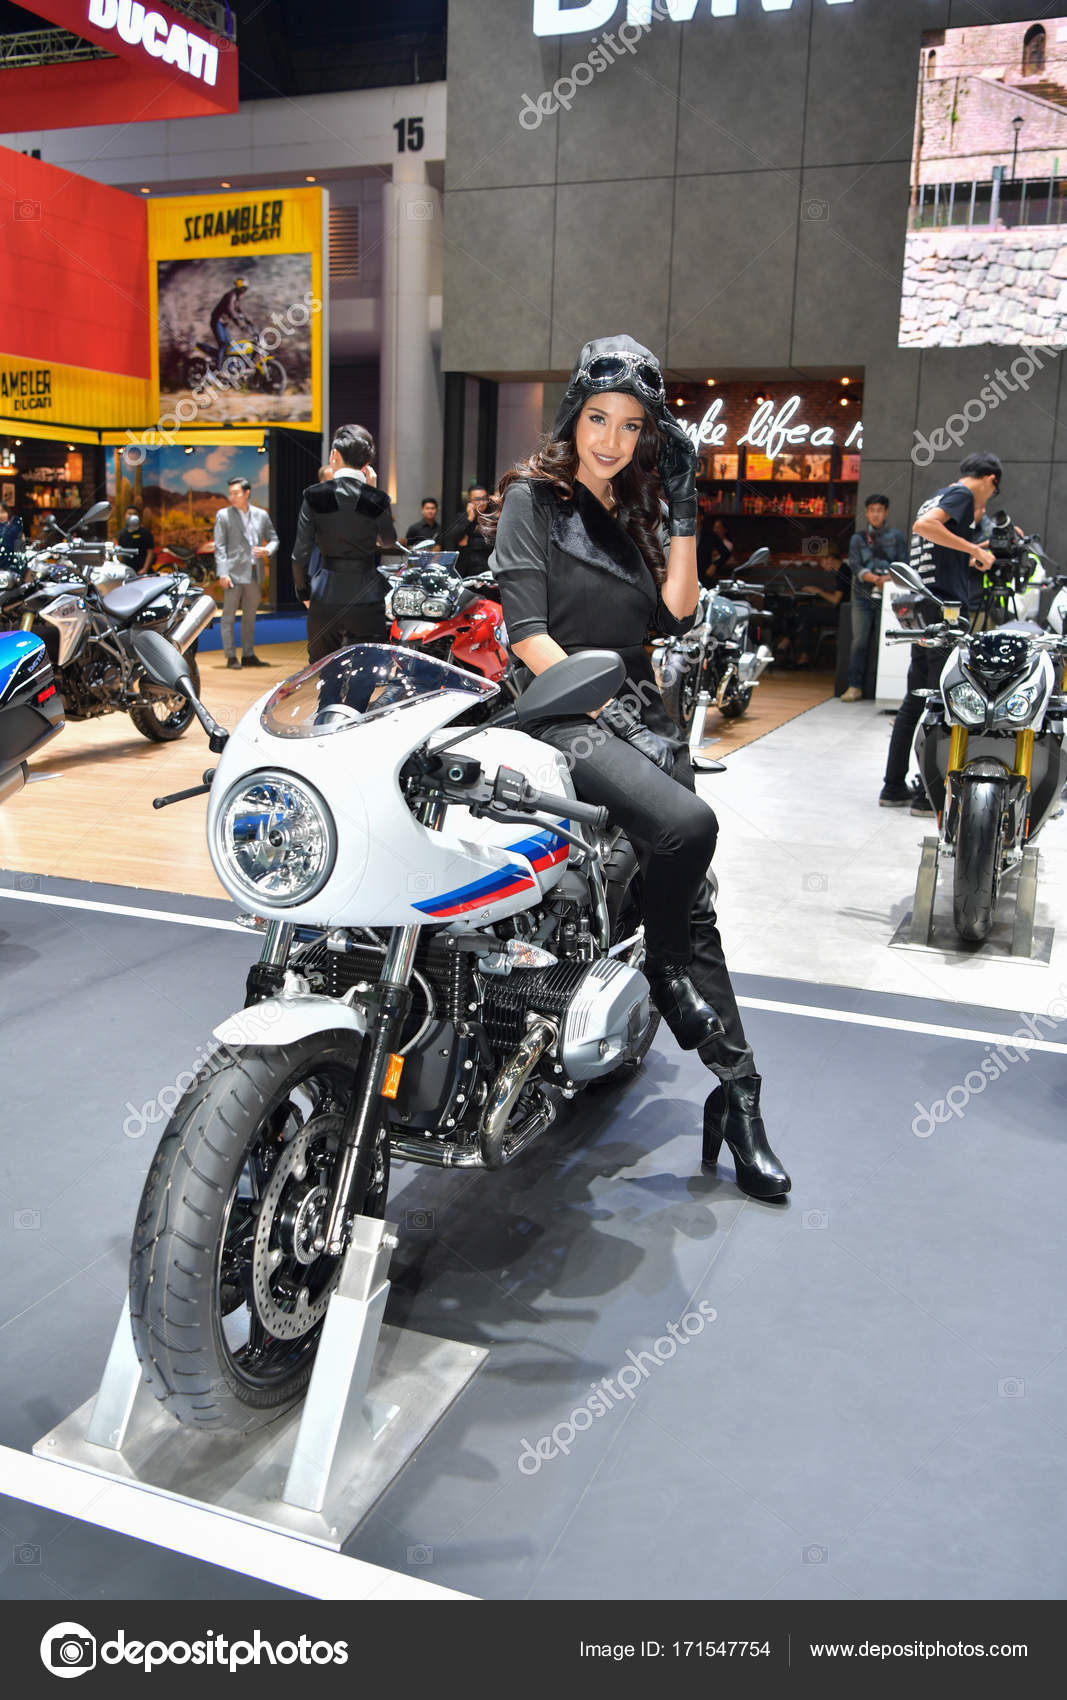 BMW motorcycle in Bangkok International Thailand Motor Show 2017